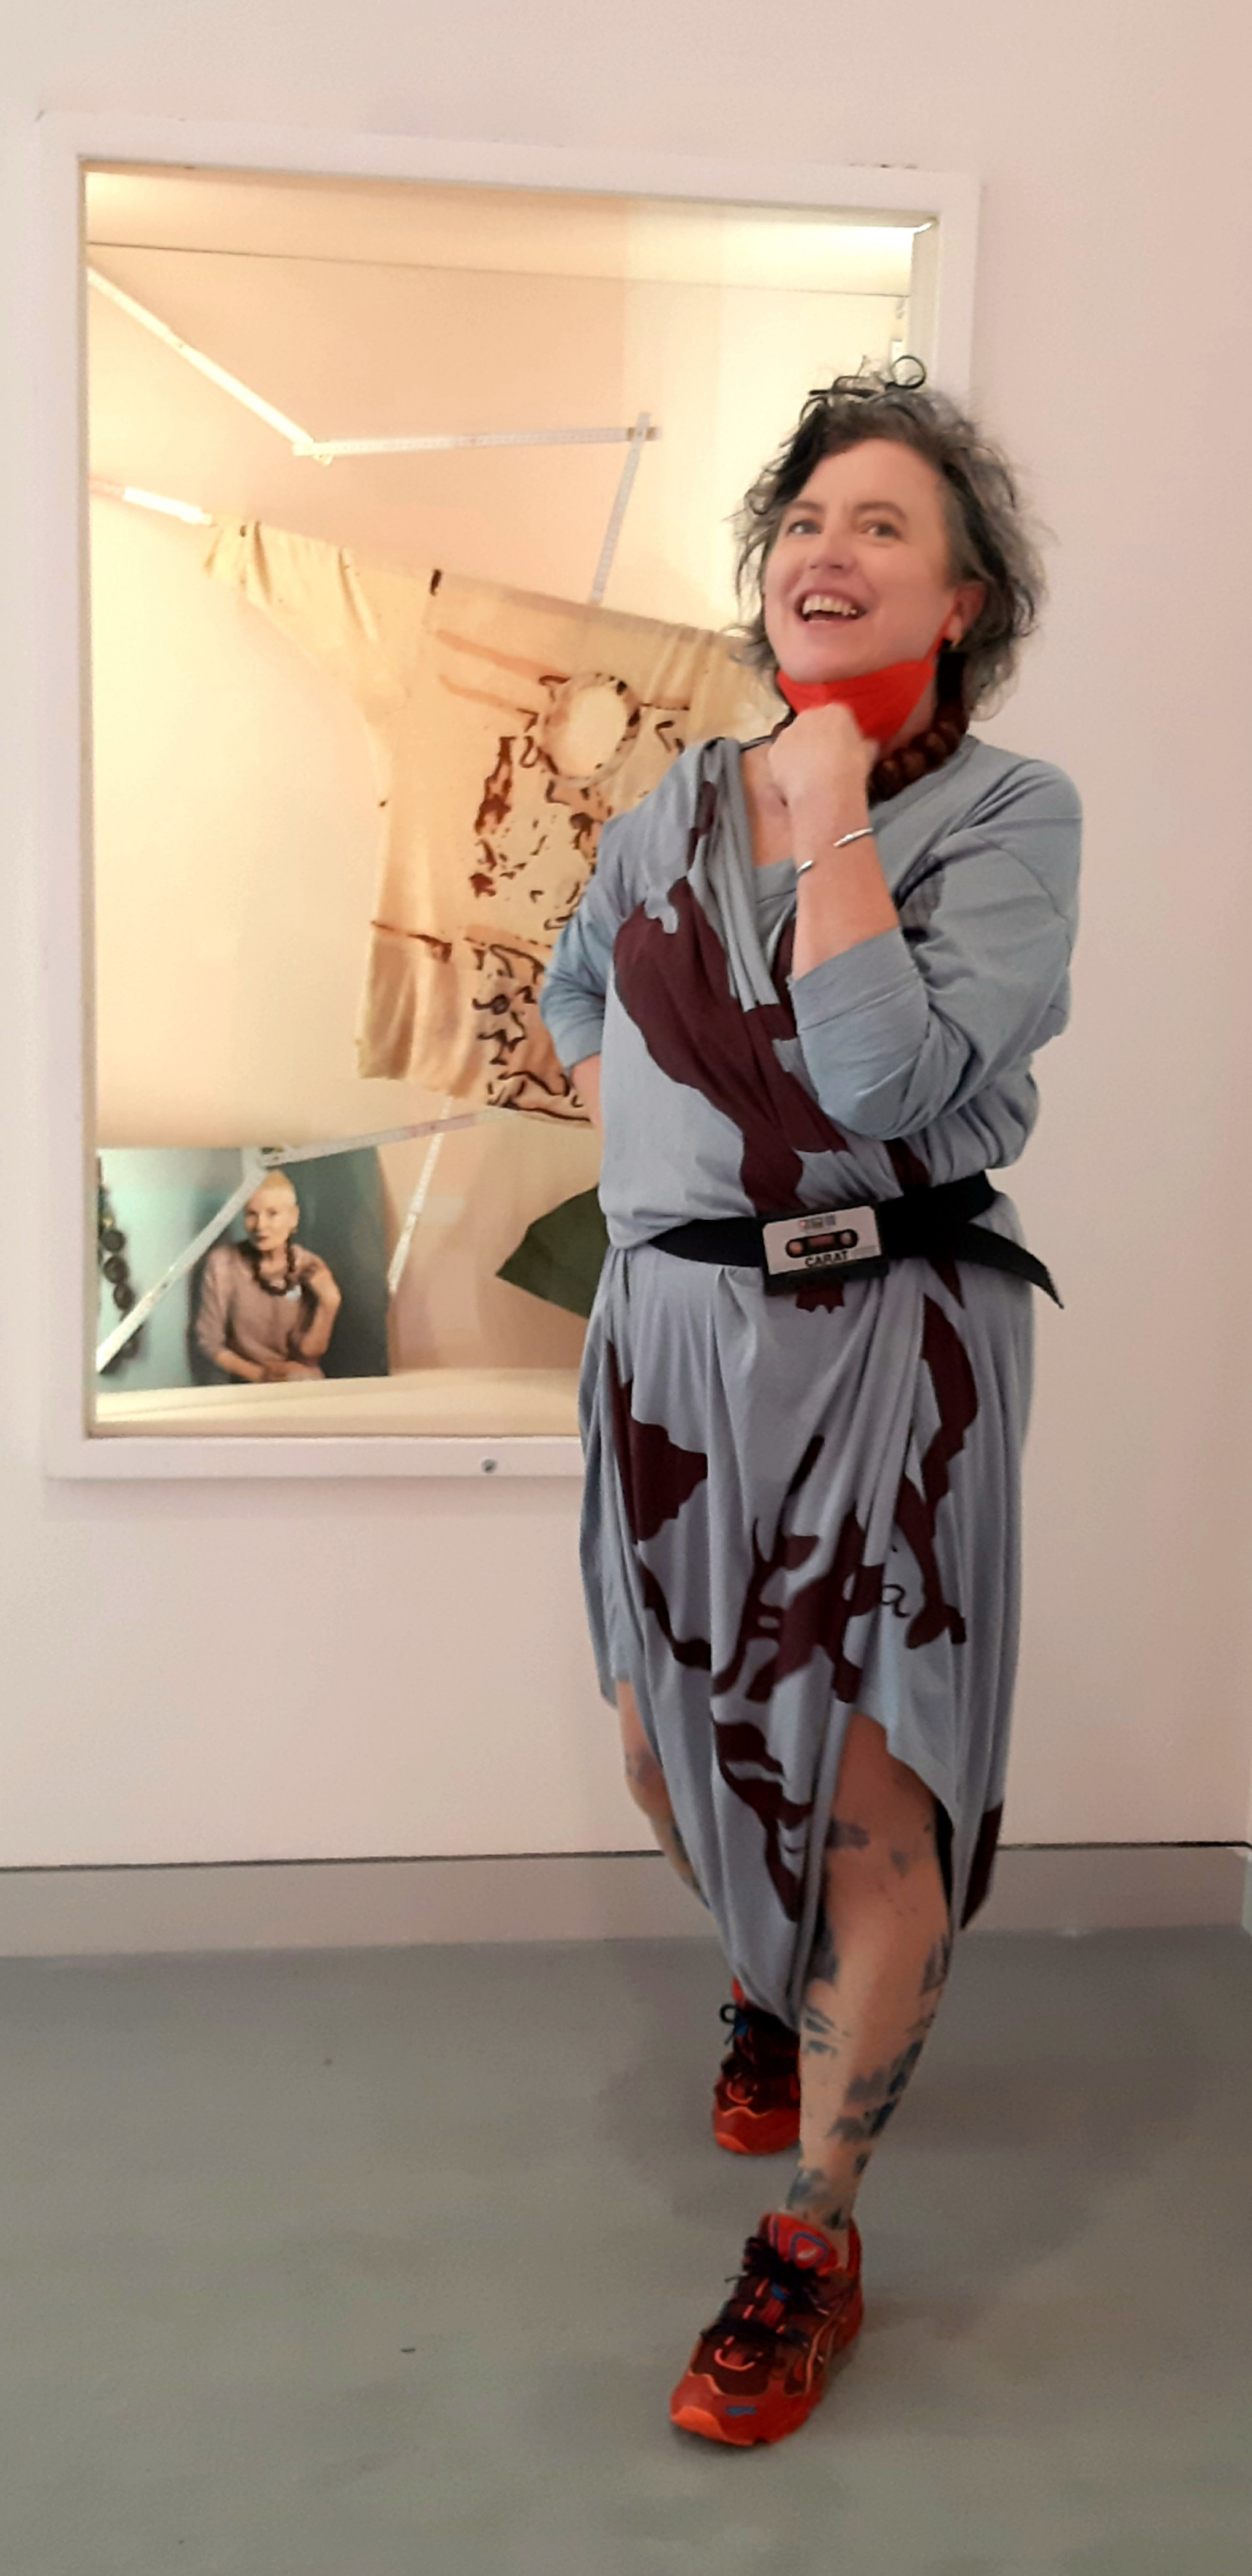 Die Designerin M. Glomb steht vor einem Spiegel und trägt ein selbstentworfenes Kleid